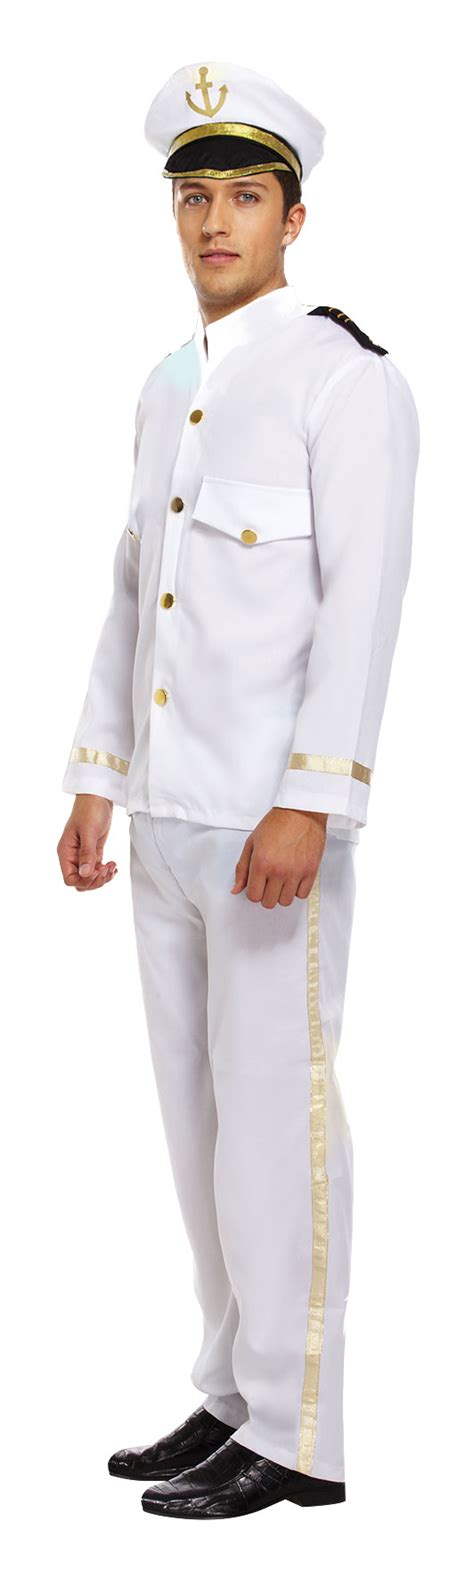 Captain One Size Adult Fancy Dress Costume Henbrandt Ltd